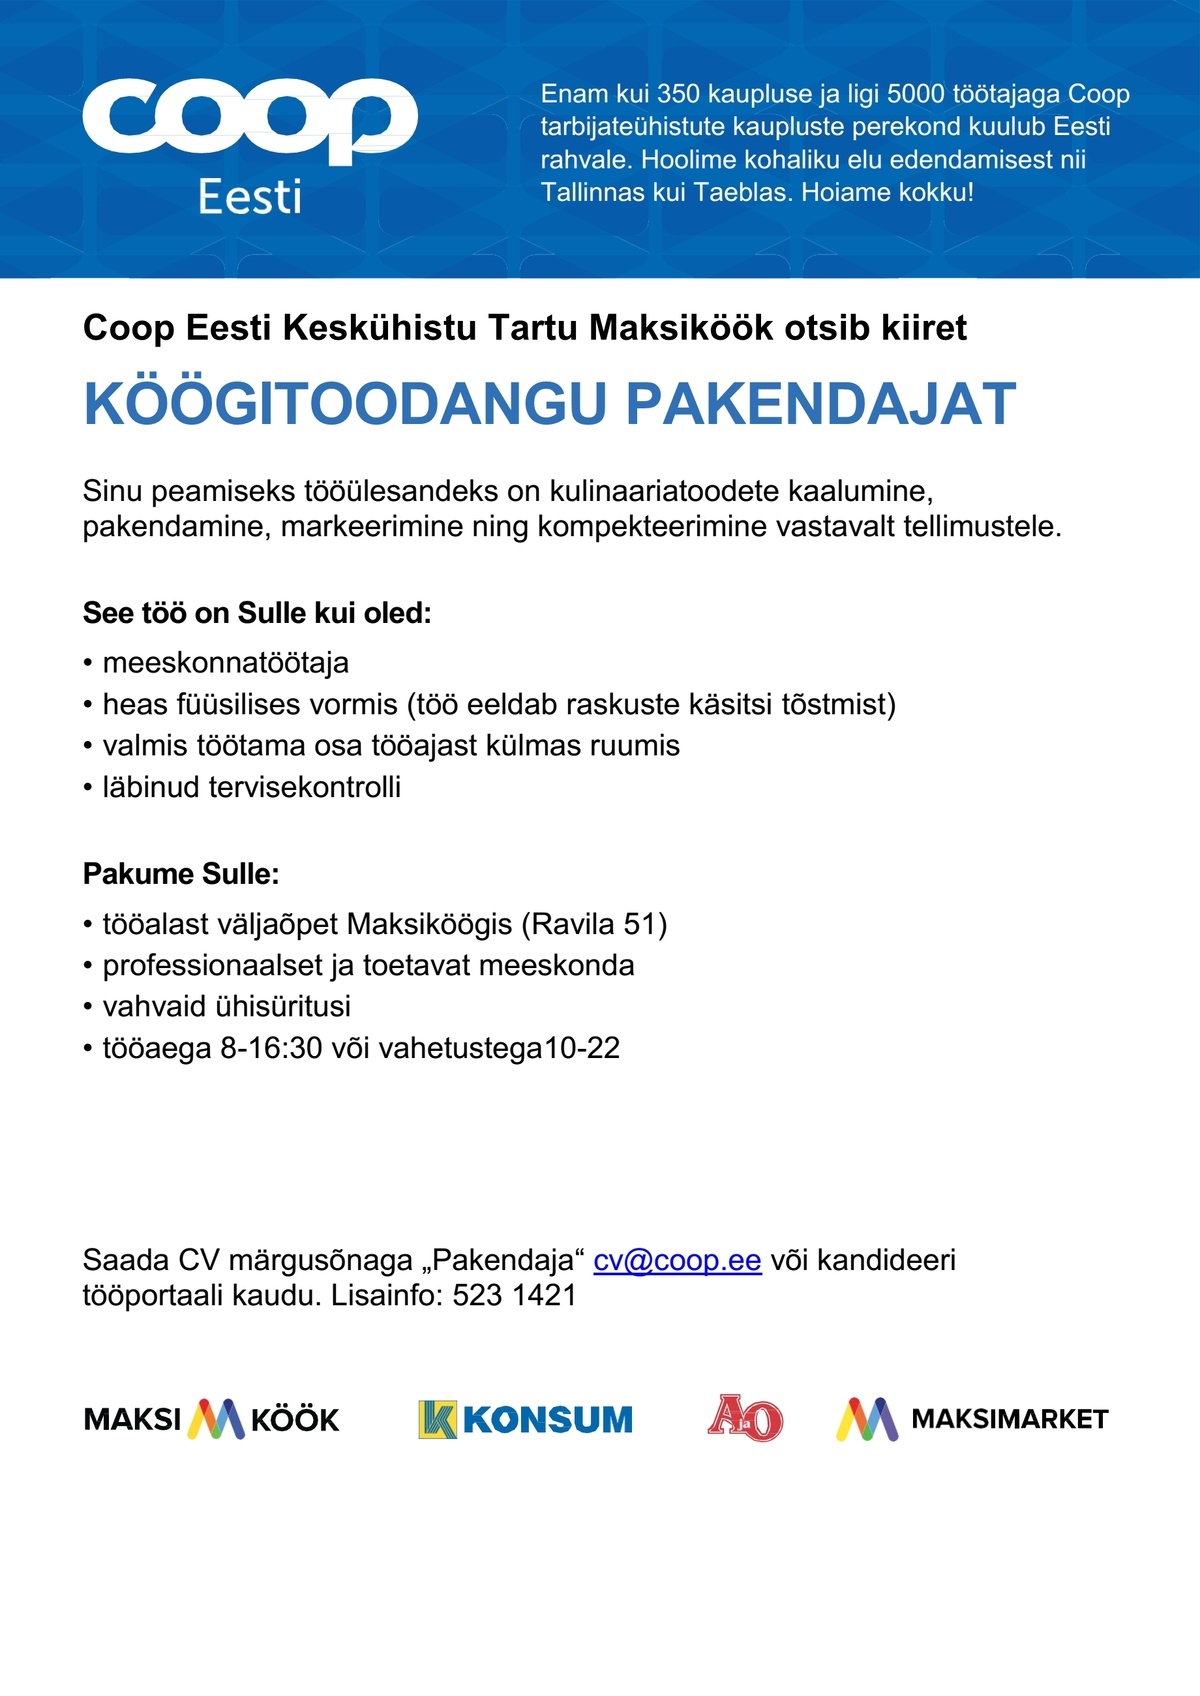 Coop Eesti Keskühistu Pakendaja (Maksiköök)